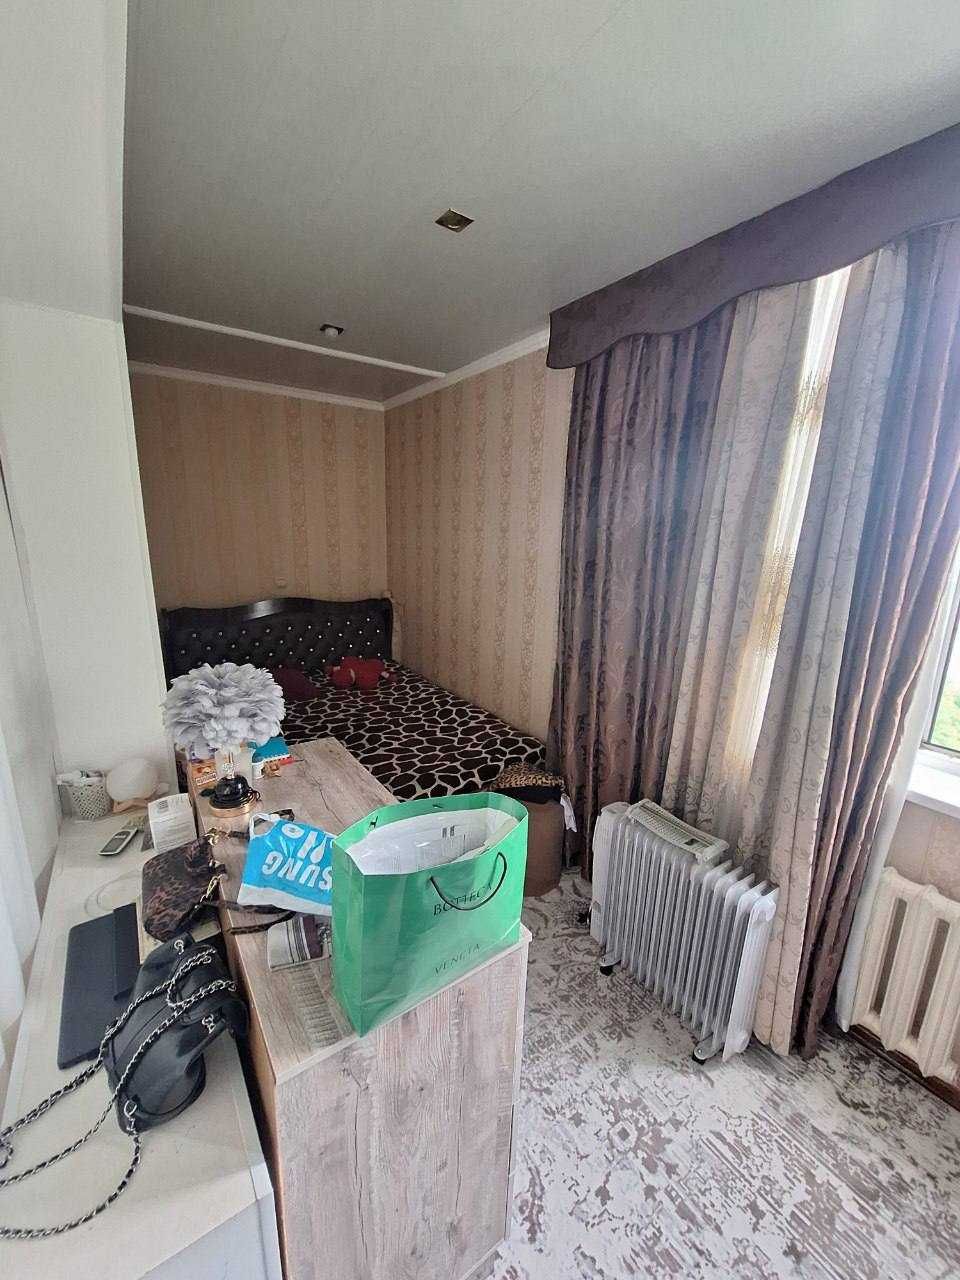 Феруза Продается квартира 2/4/4 балкон 2х6 Можно под ипотеку N,436